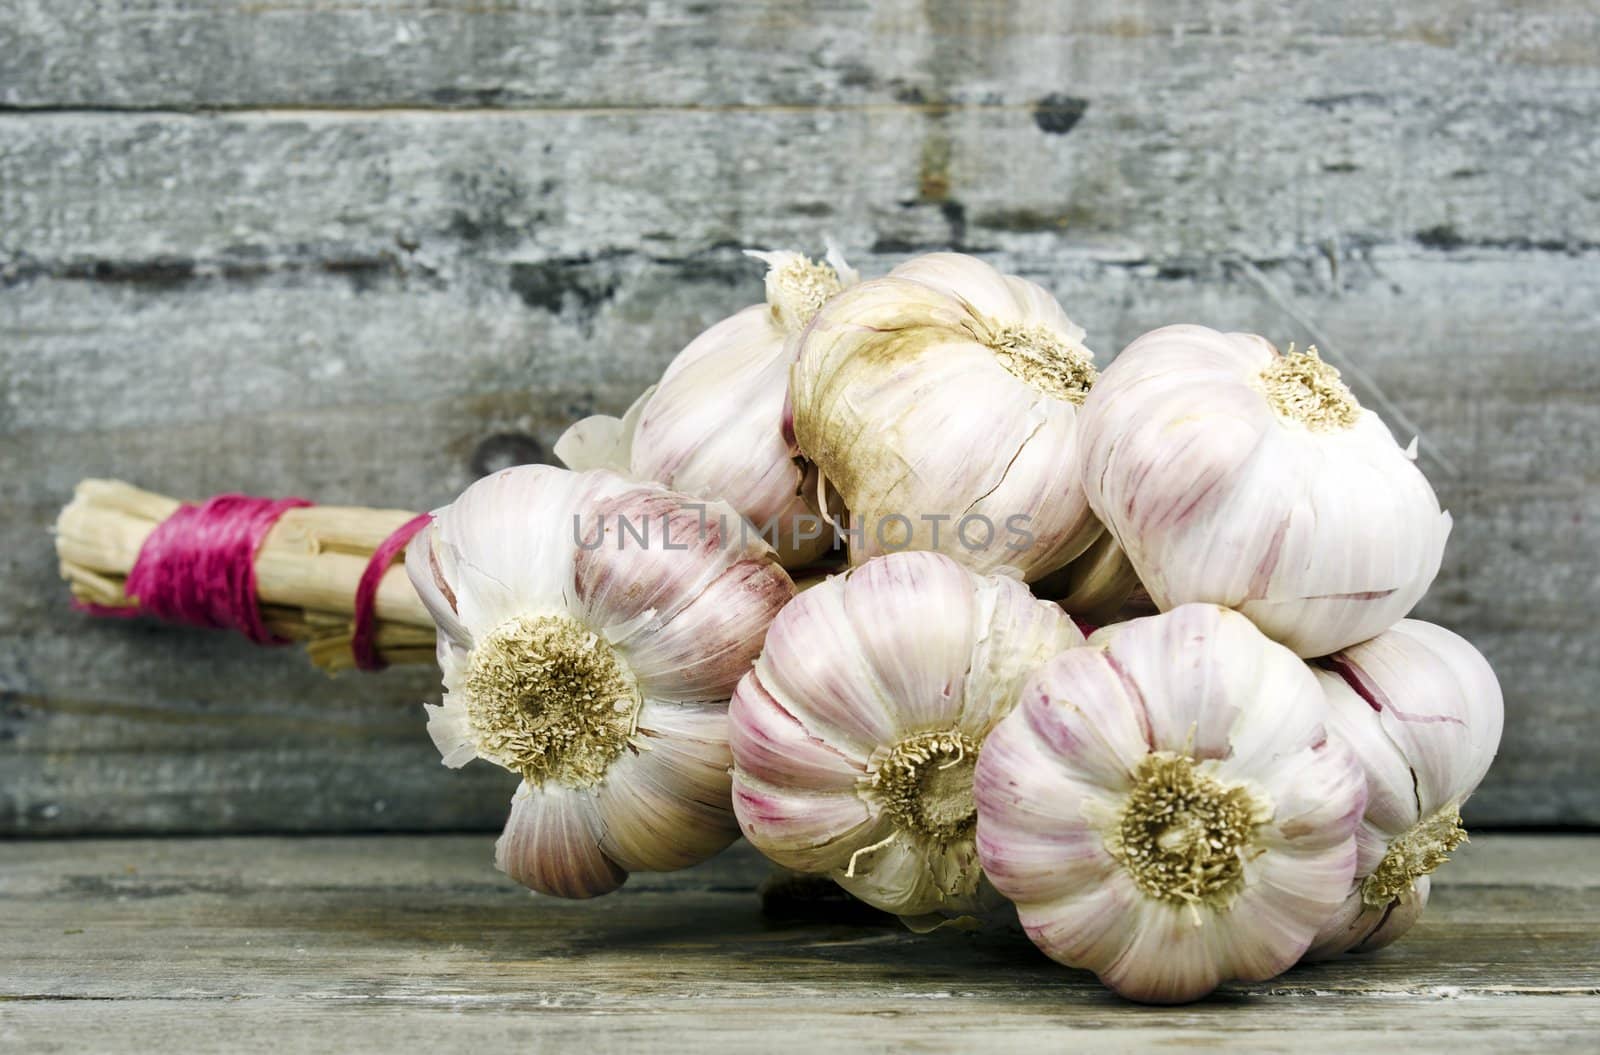 garlic by gufoto